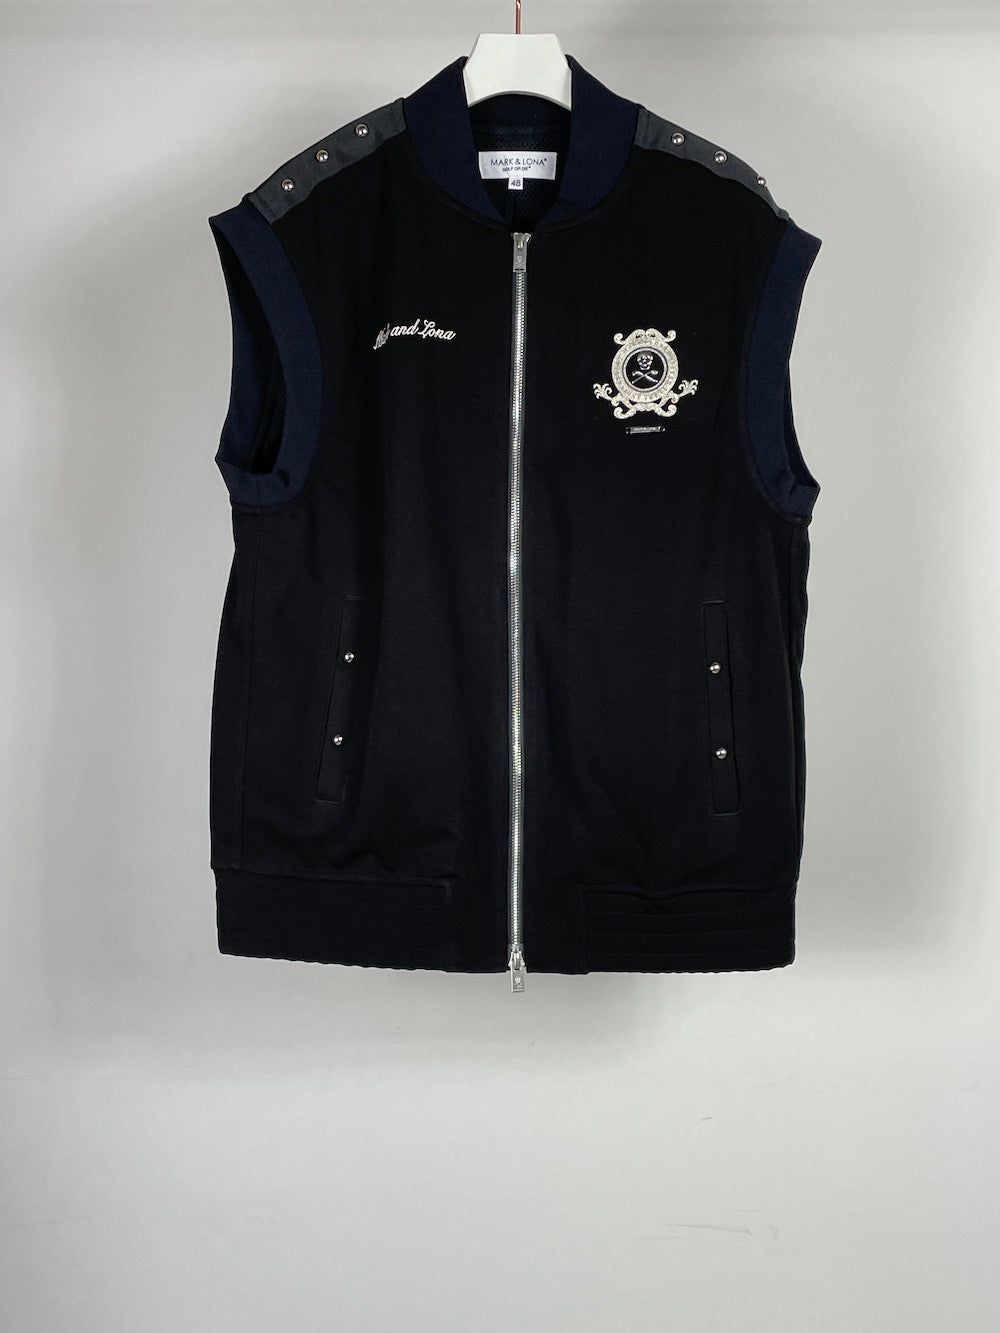 Prince Stud Zip Vest | ジップアップベスト | ブラック | メンズ | ゴルフウェア - 44(S) - BLACK